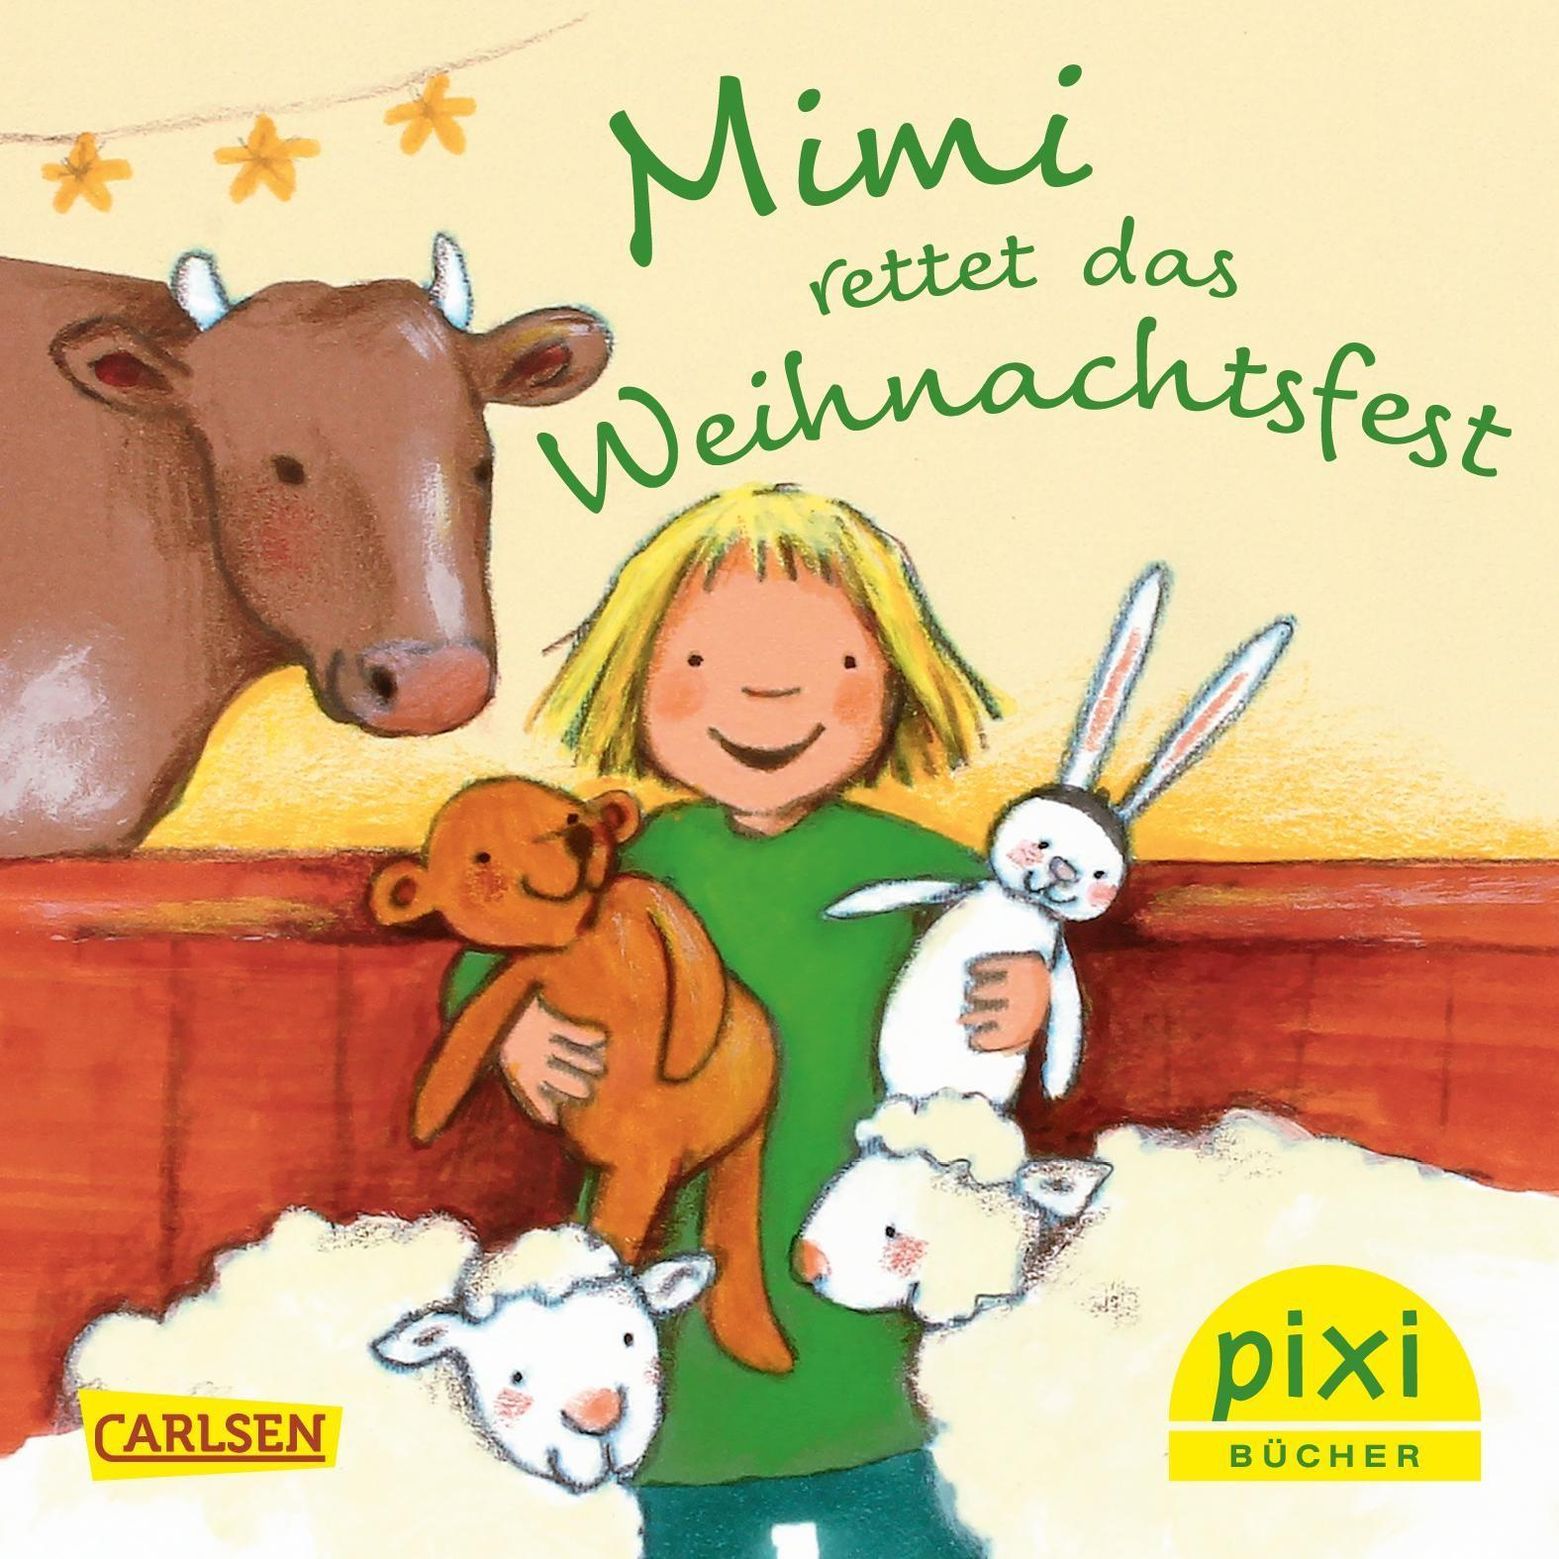 Pixi Bücher: Pixi Adventskalender in Weihnachtsbaumform 2019, 24 Teile Buch  versandkostenfrei bei Weltbild.ch bestellen